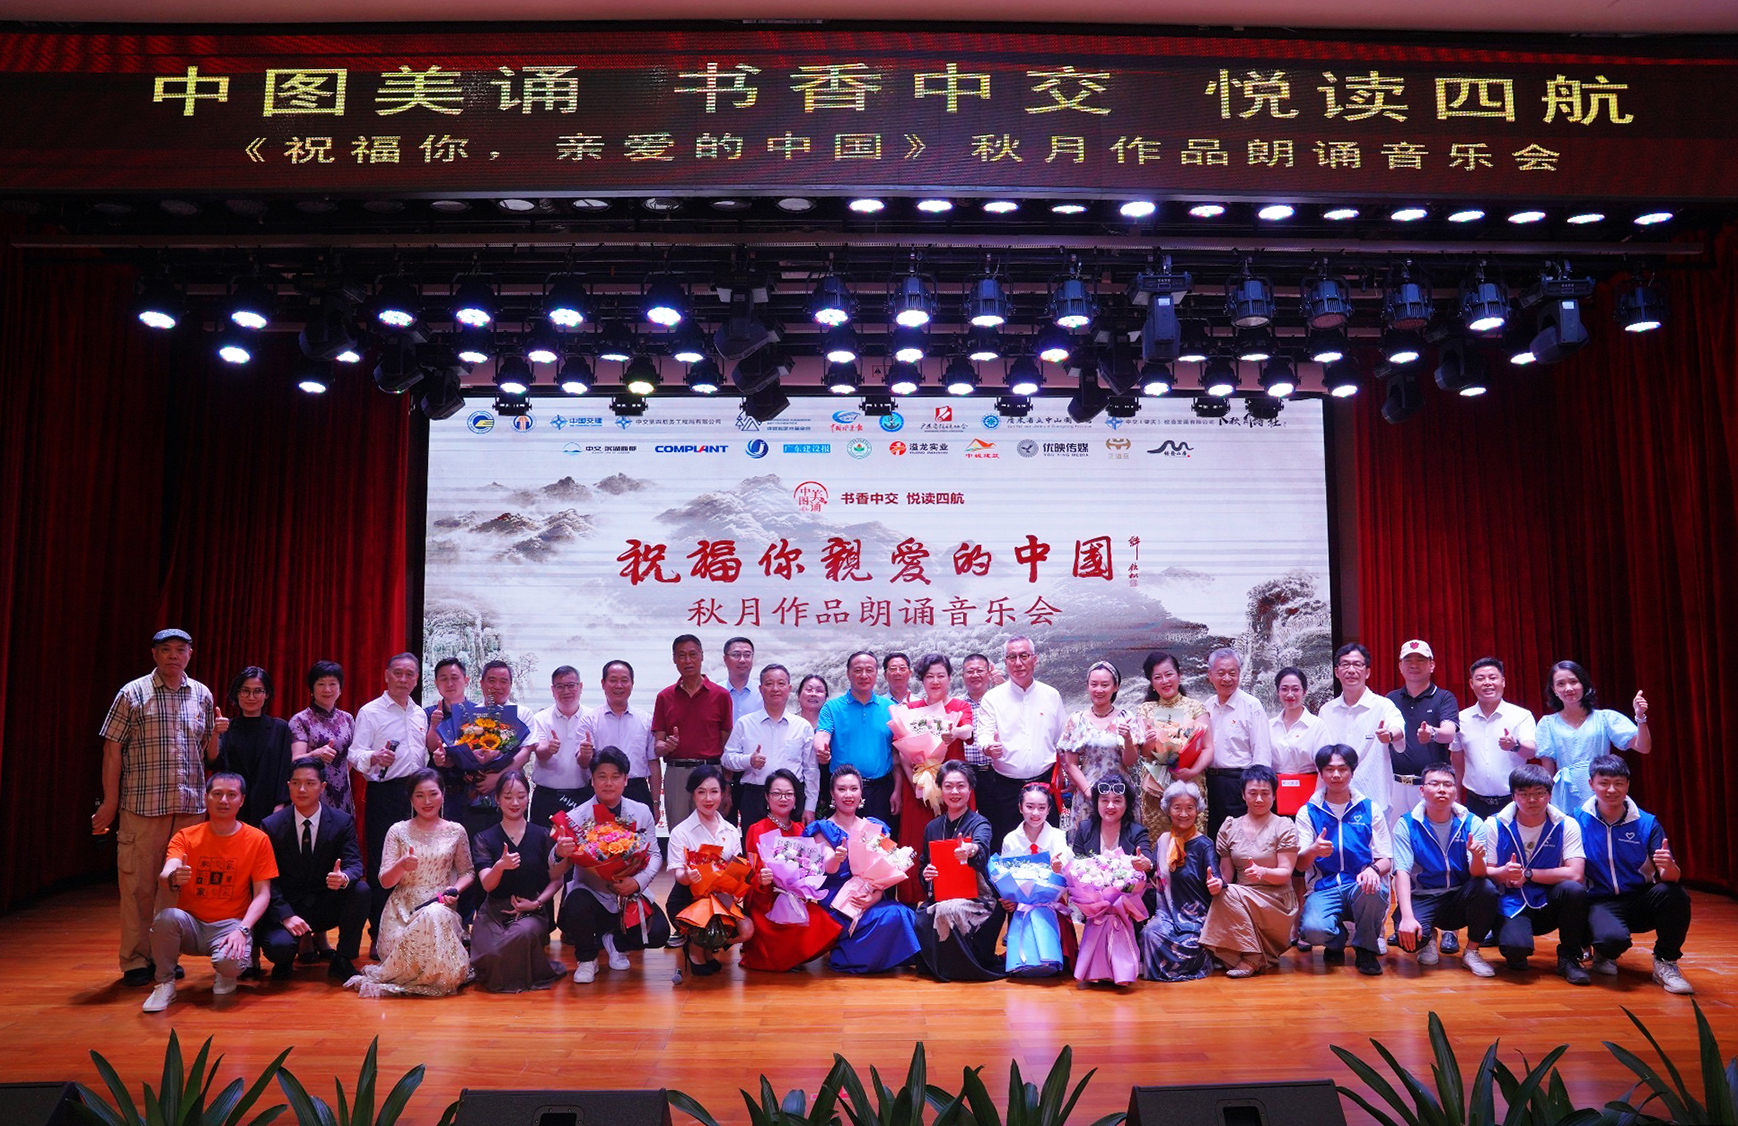 《祝福你 親愛的中國》秋月作品朗誦音樂會在廣州成功舉辦